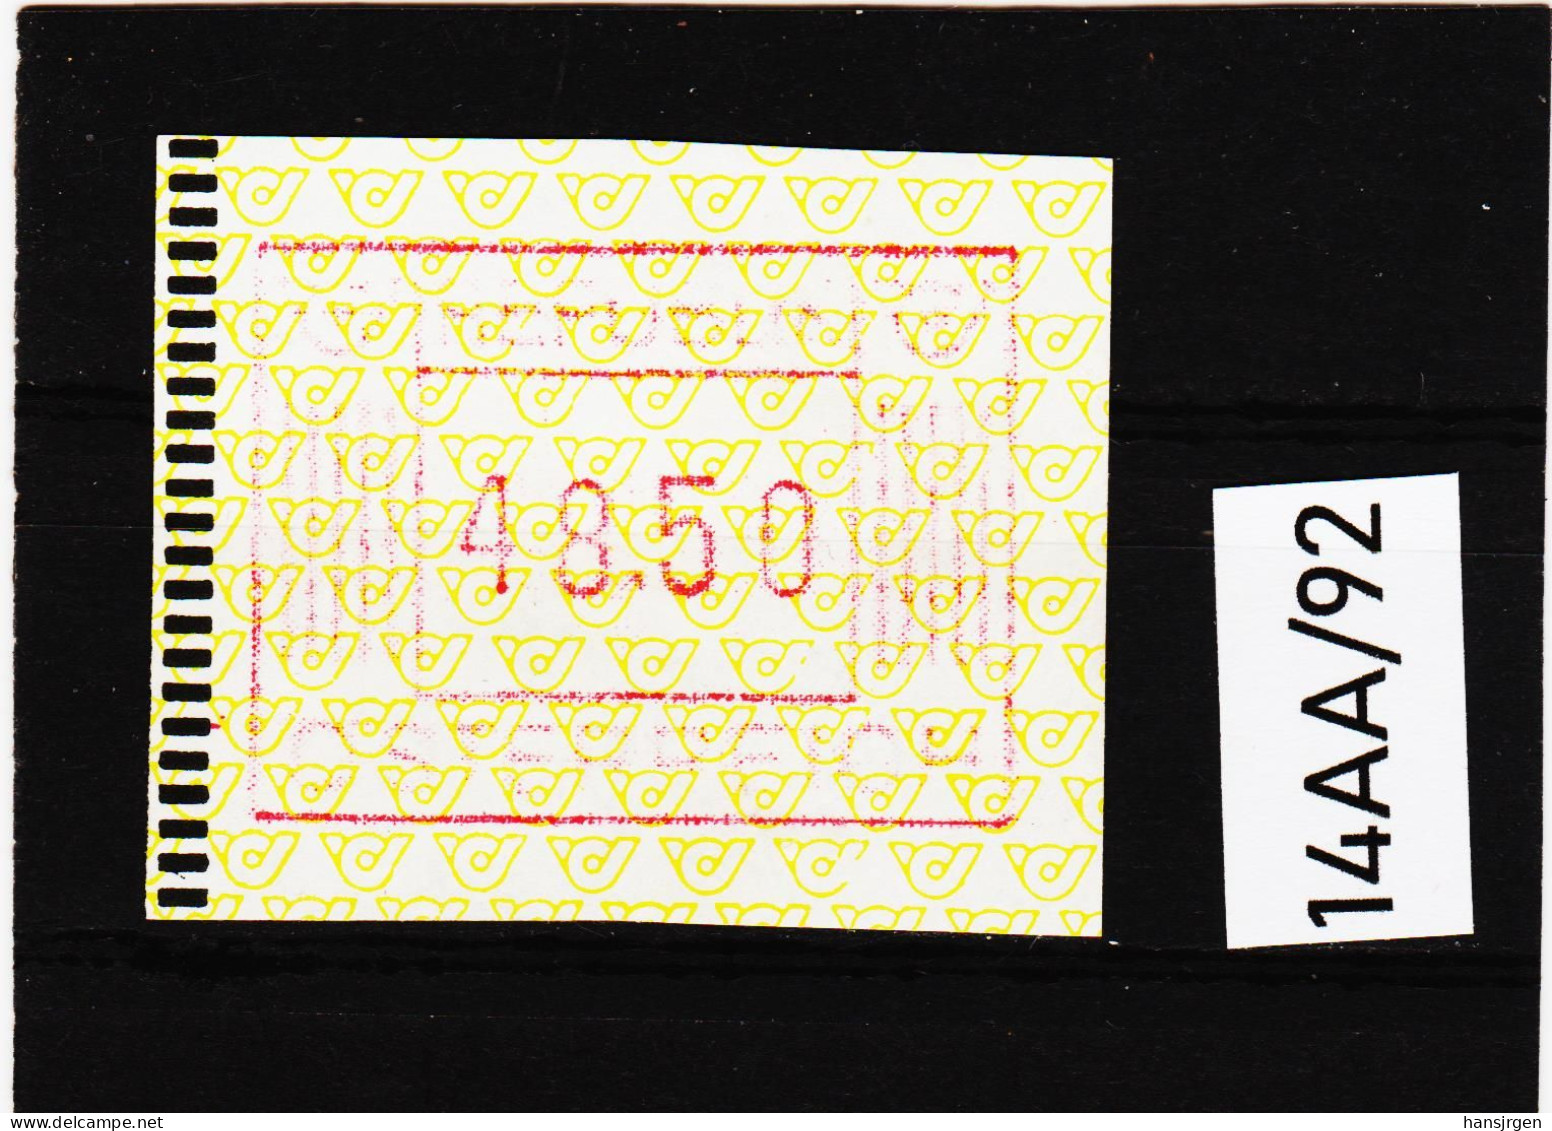 14AA/92  ÖSTERREICH 1983 AUTOMATENMARKEN 1. AUSGABE  48,50 SCHILLING   ** Postfrisch - Automatenmarken [ATM]